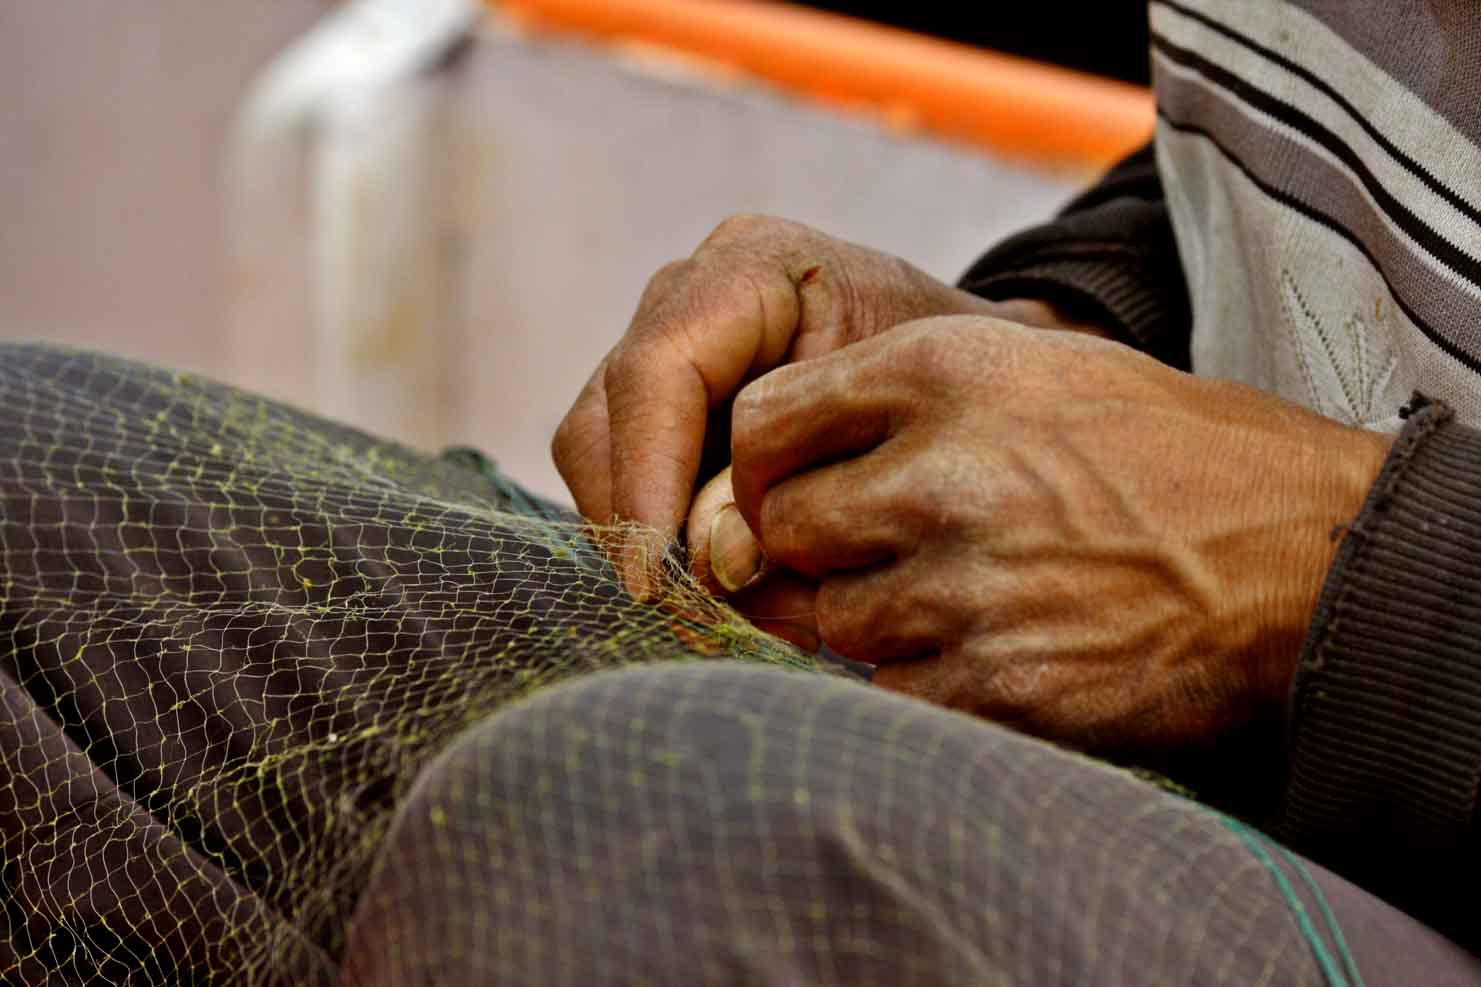 Hands of Bai fisherman repairing gill net. Dali, China. .jpg